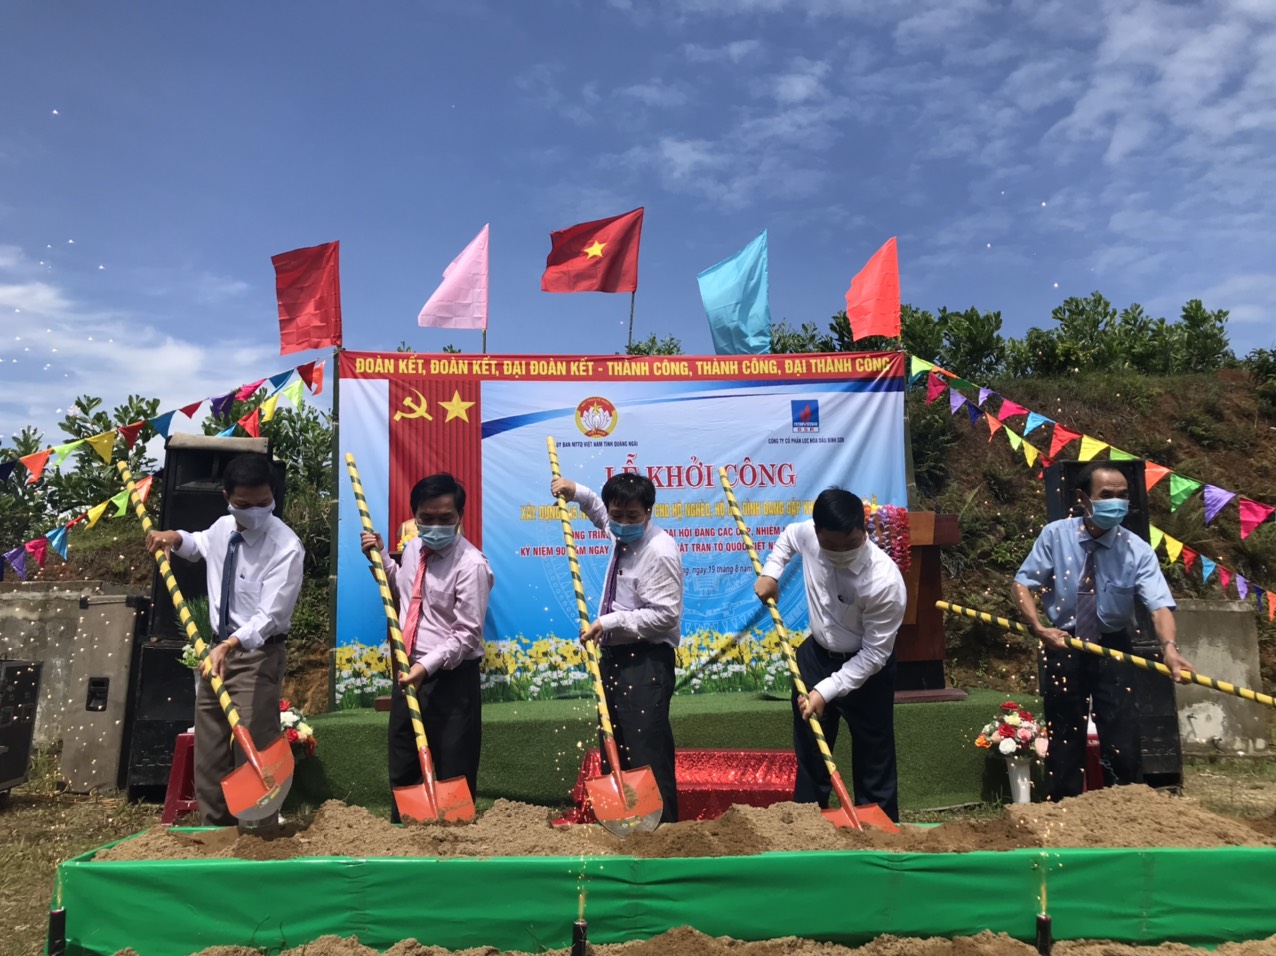 Ủy ban MTTQ Việt Nam tỉnh phối hợp với Công ty cổ phần lọc hóa dầu Bình Sơn tổ chức Lễ khởi công xây dựng 145 nhà đại đoàn kết cho hộ nghèo